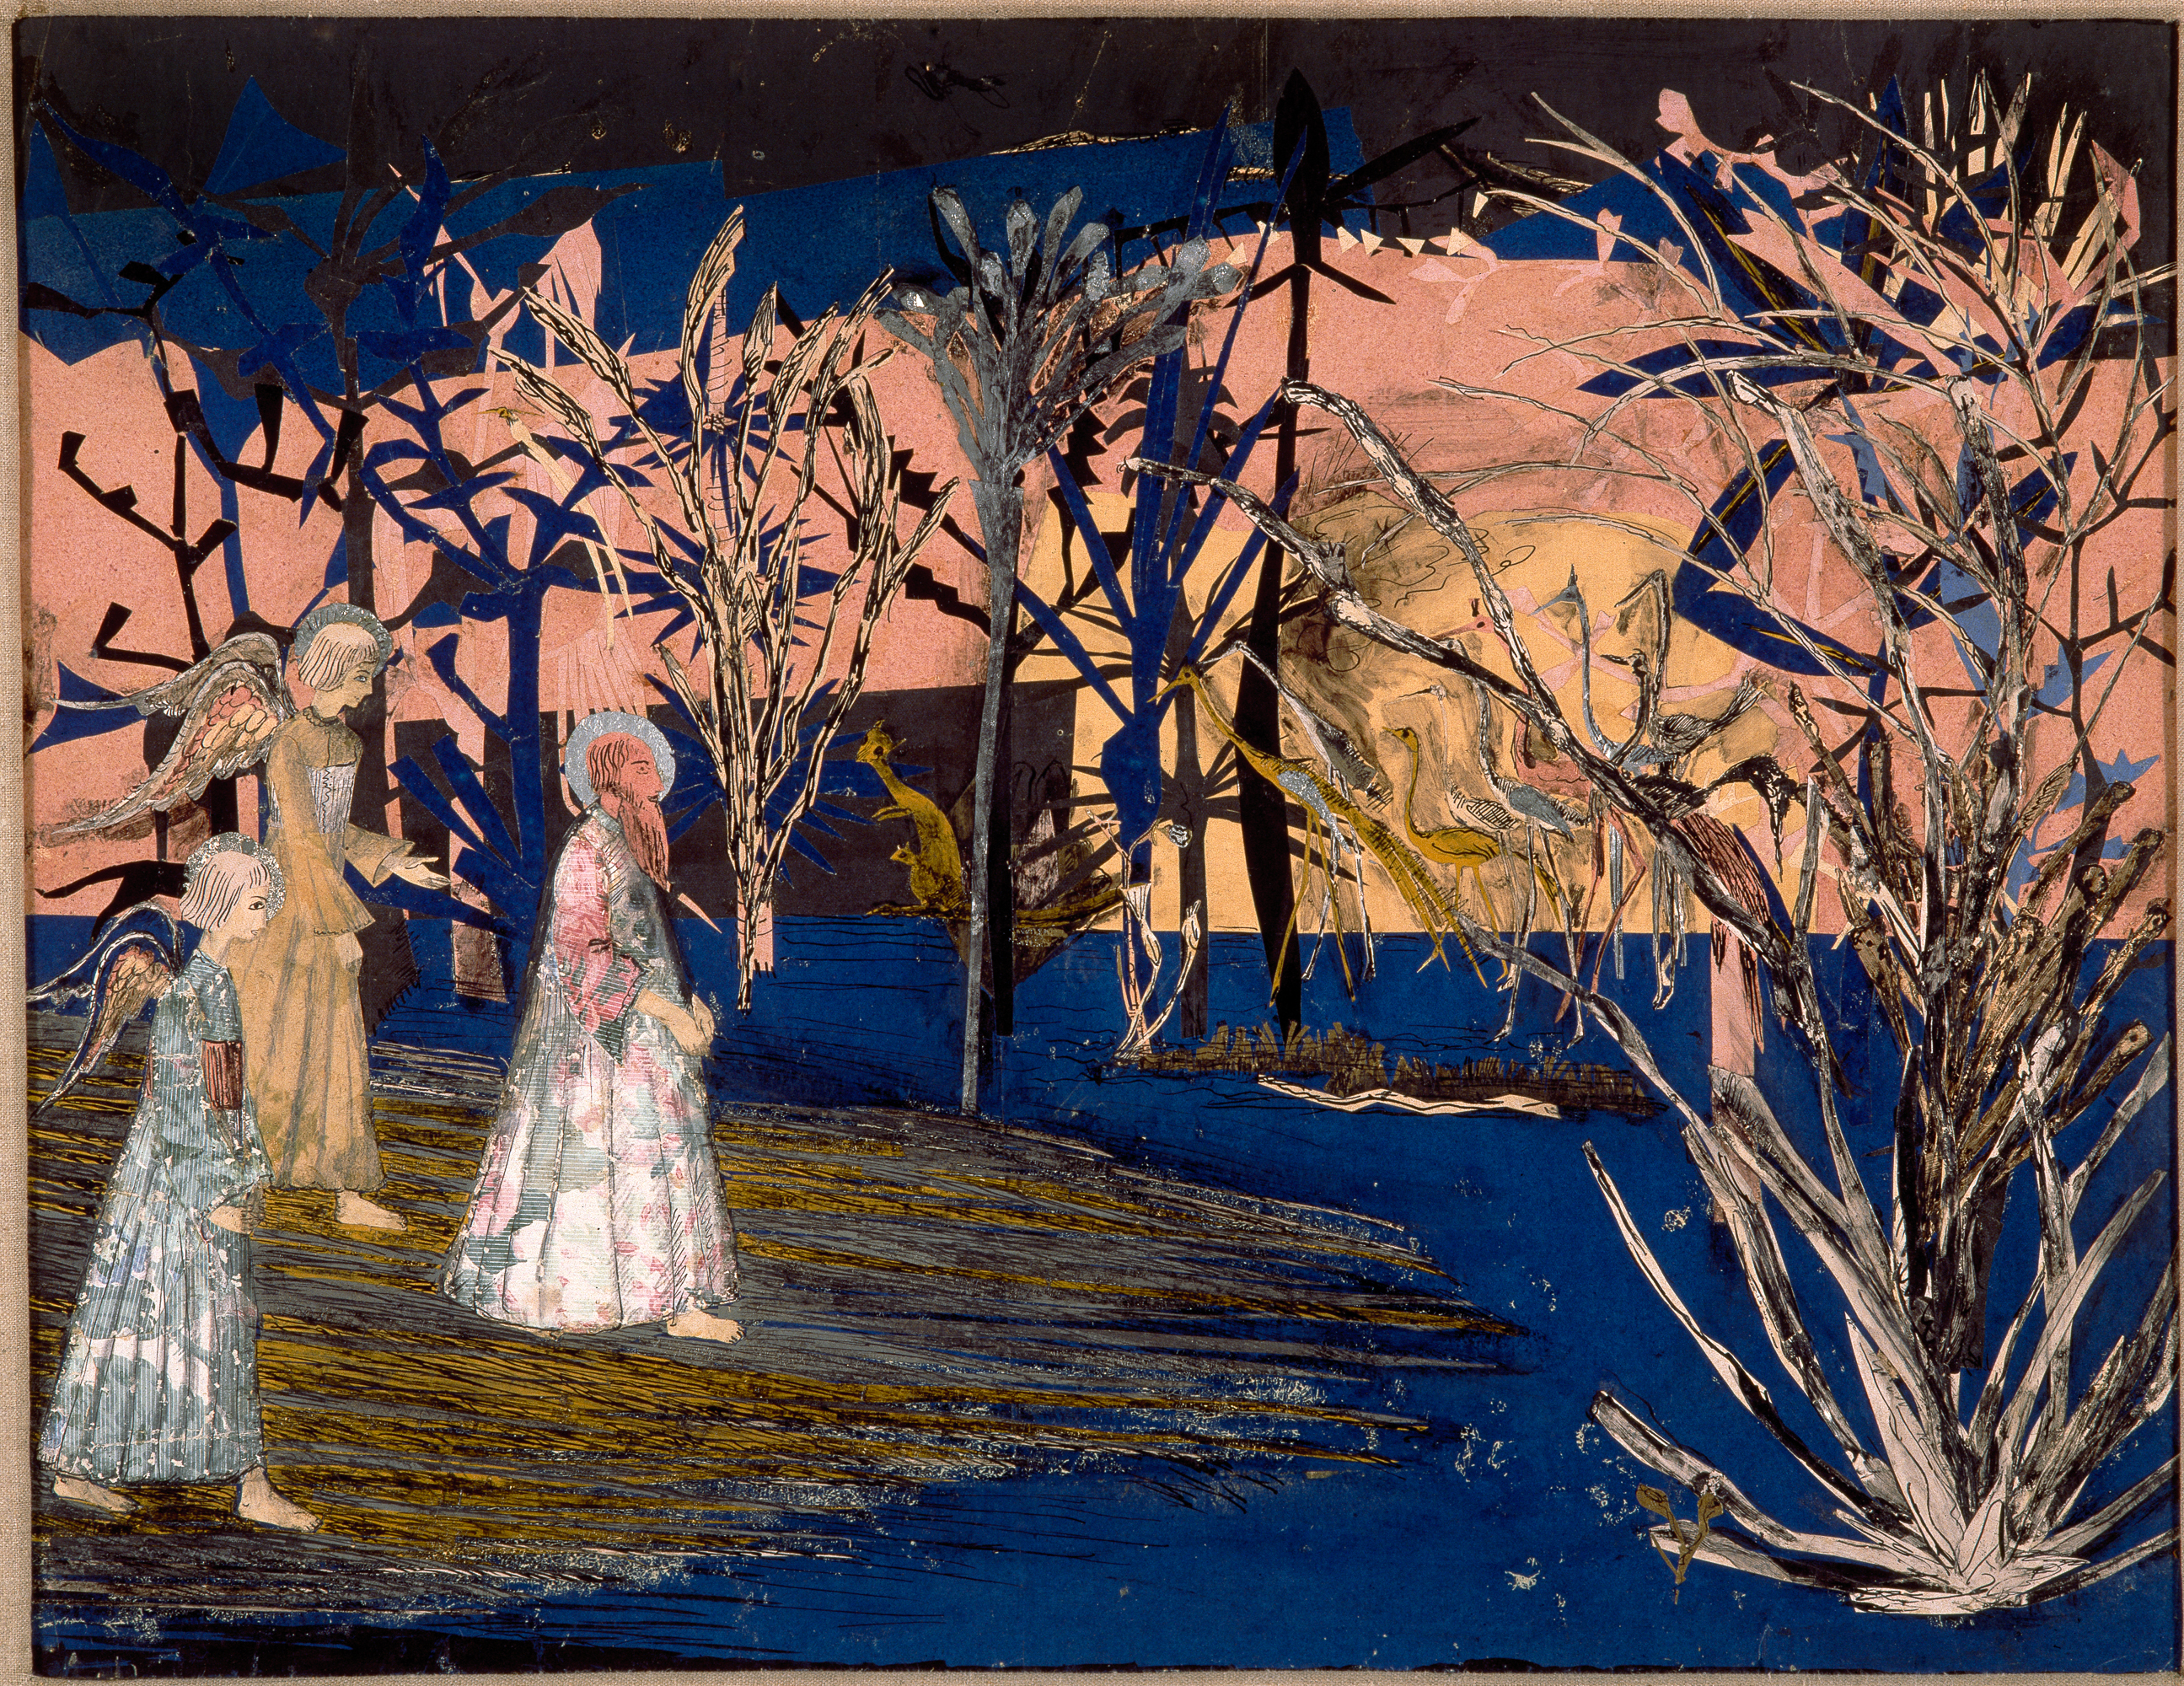 Έβδομη ημέρα στον Παράδεισο by Μούγκουρ (Γκούντμουρ Πέτουρσον Θόρνσταινσον) - 1920 - 47 x 61 εκ. 